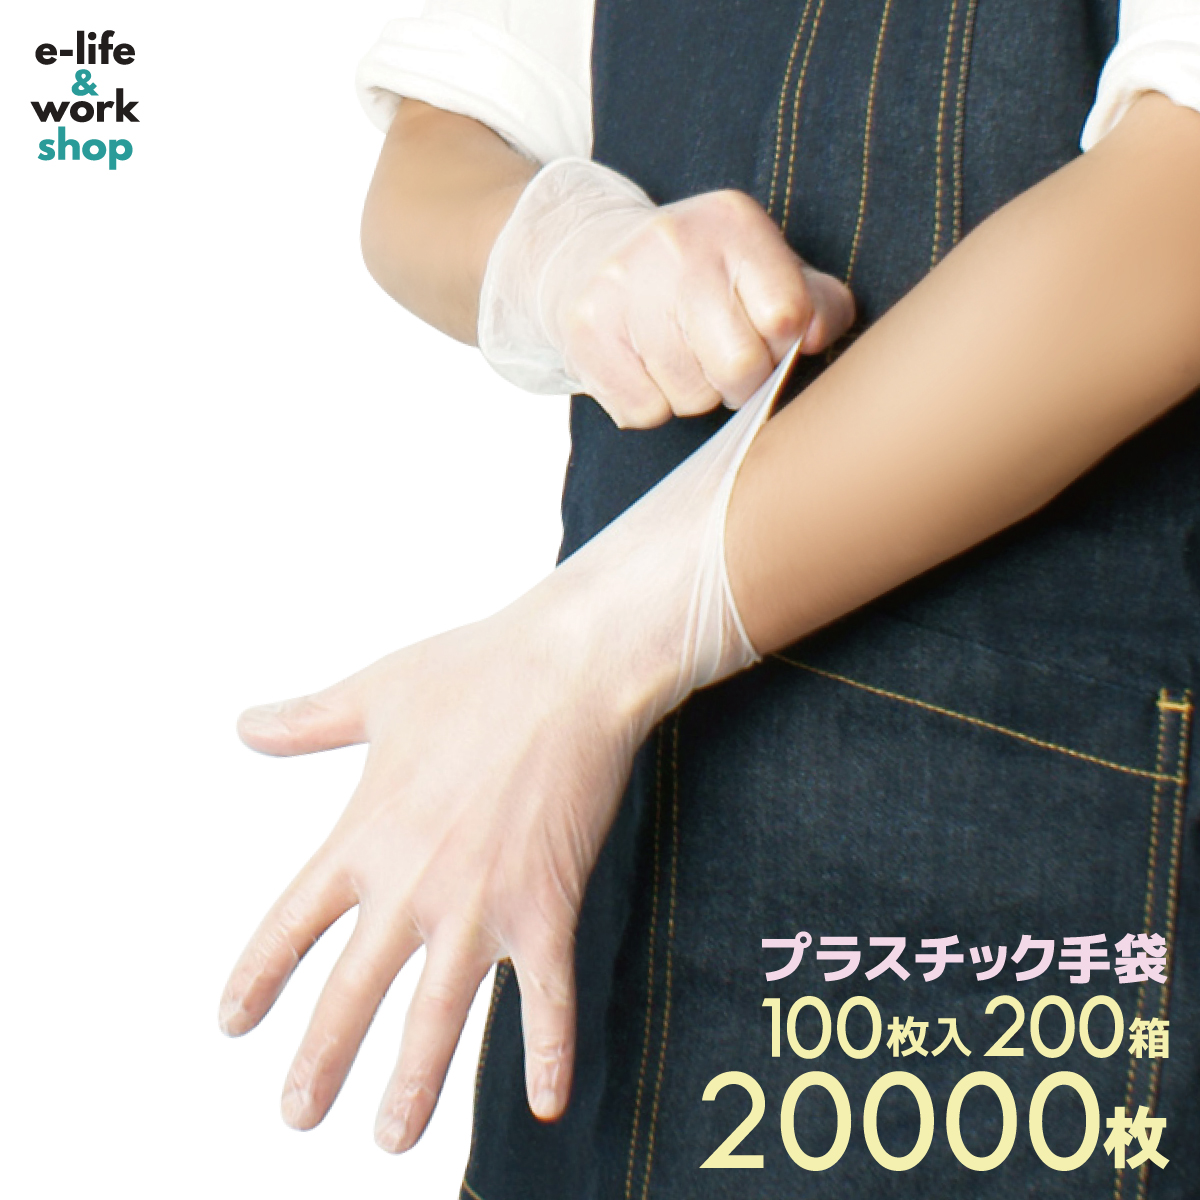 【楽天市場】プラスチック手袋 パウダーフリー 2000枚入り 100枚入